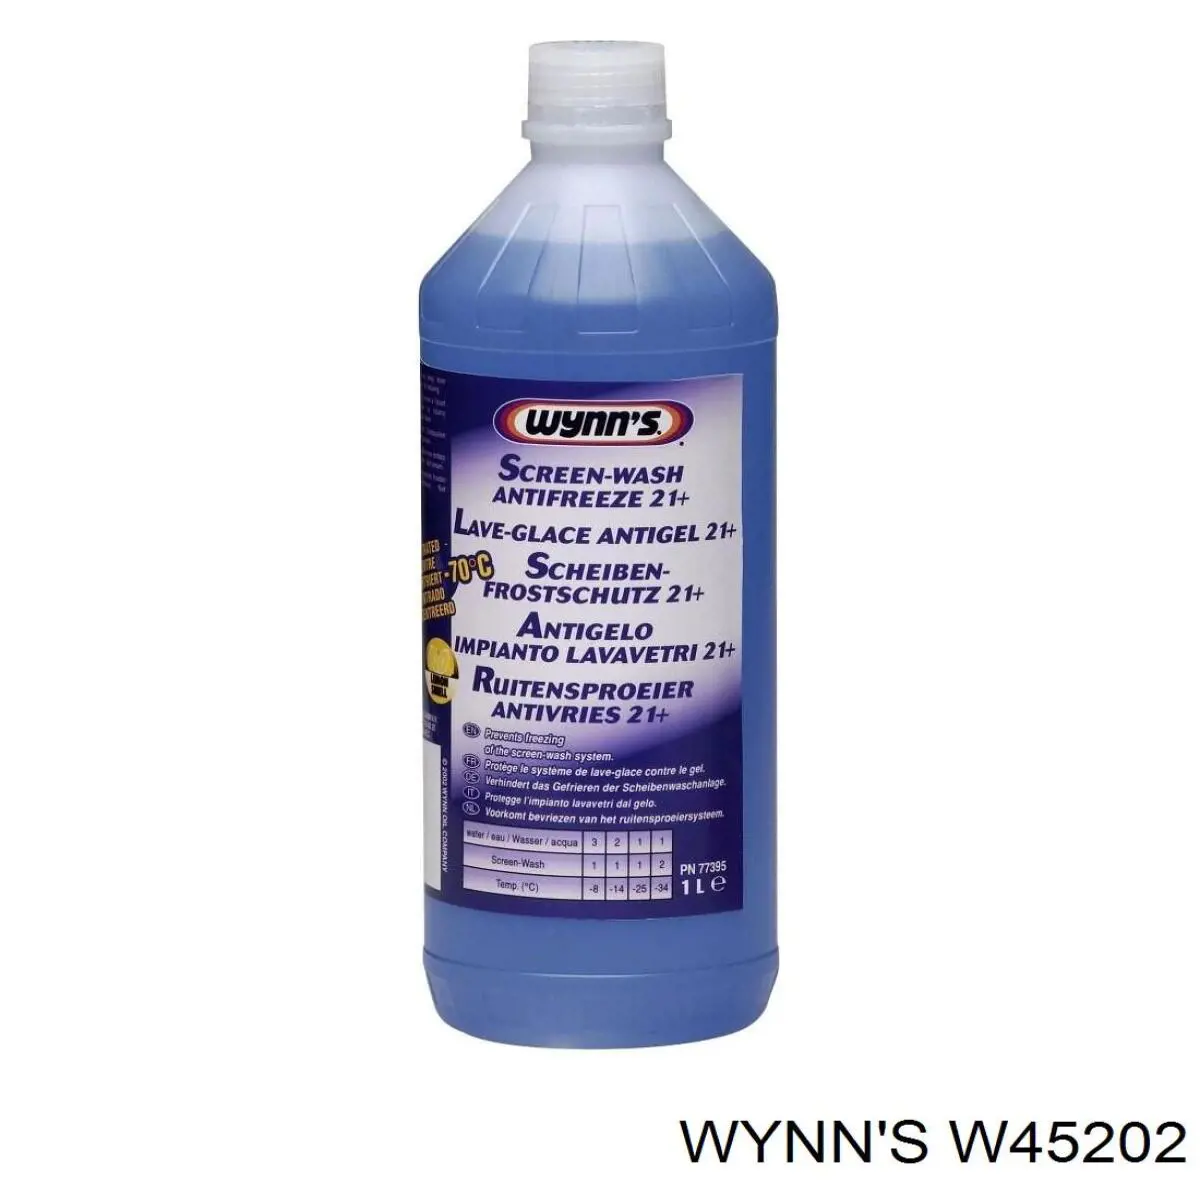 Líquido limpiaparabrisas W45202 Wynn's